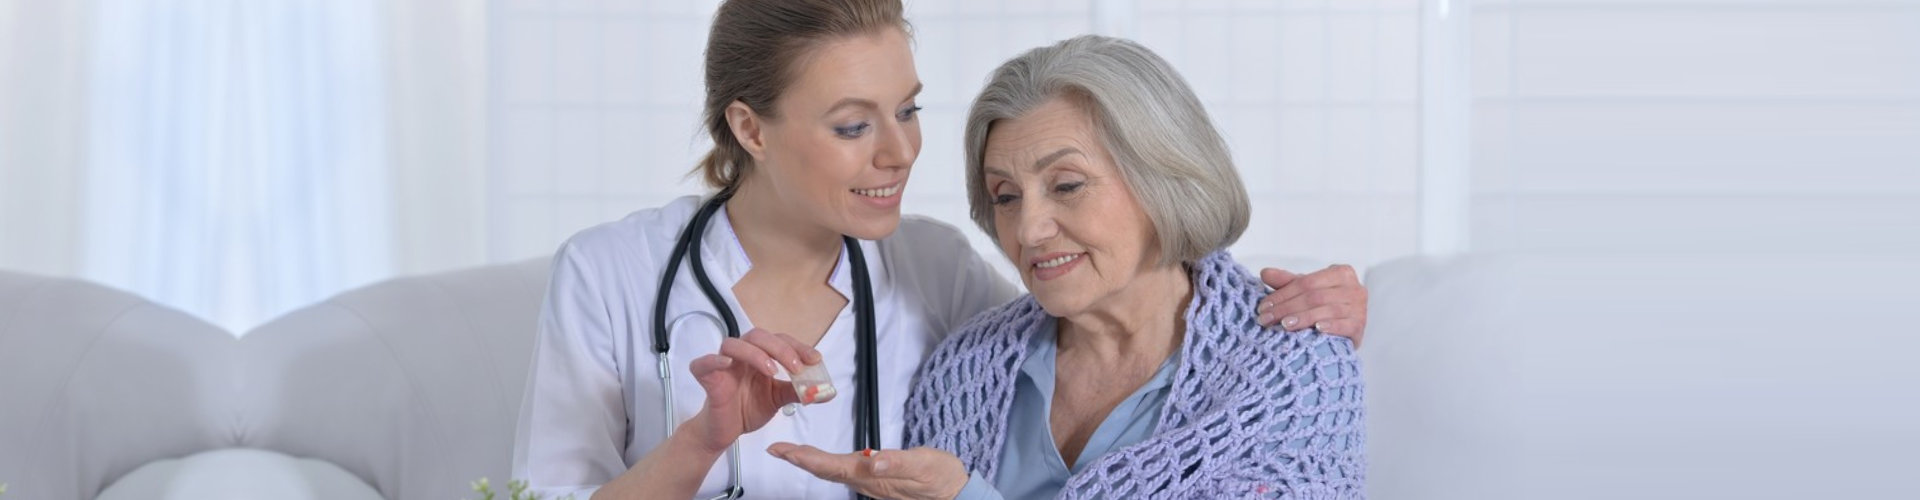 caregiver giving elder woman medicine